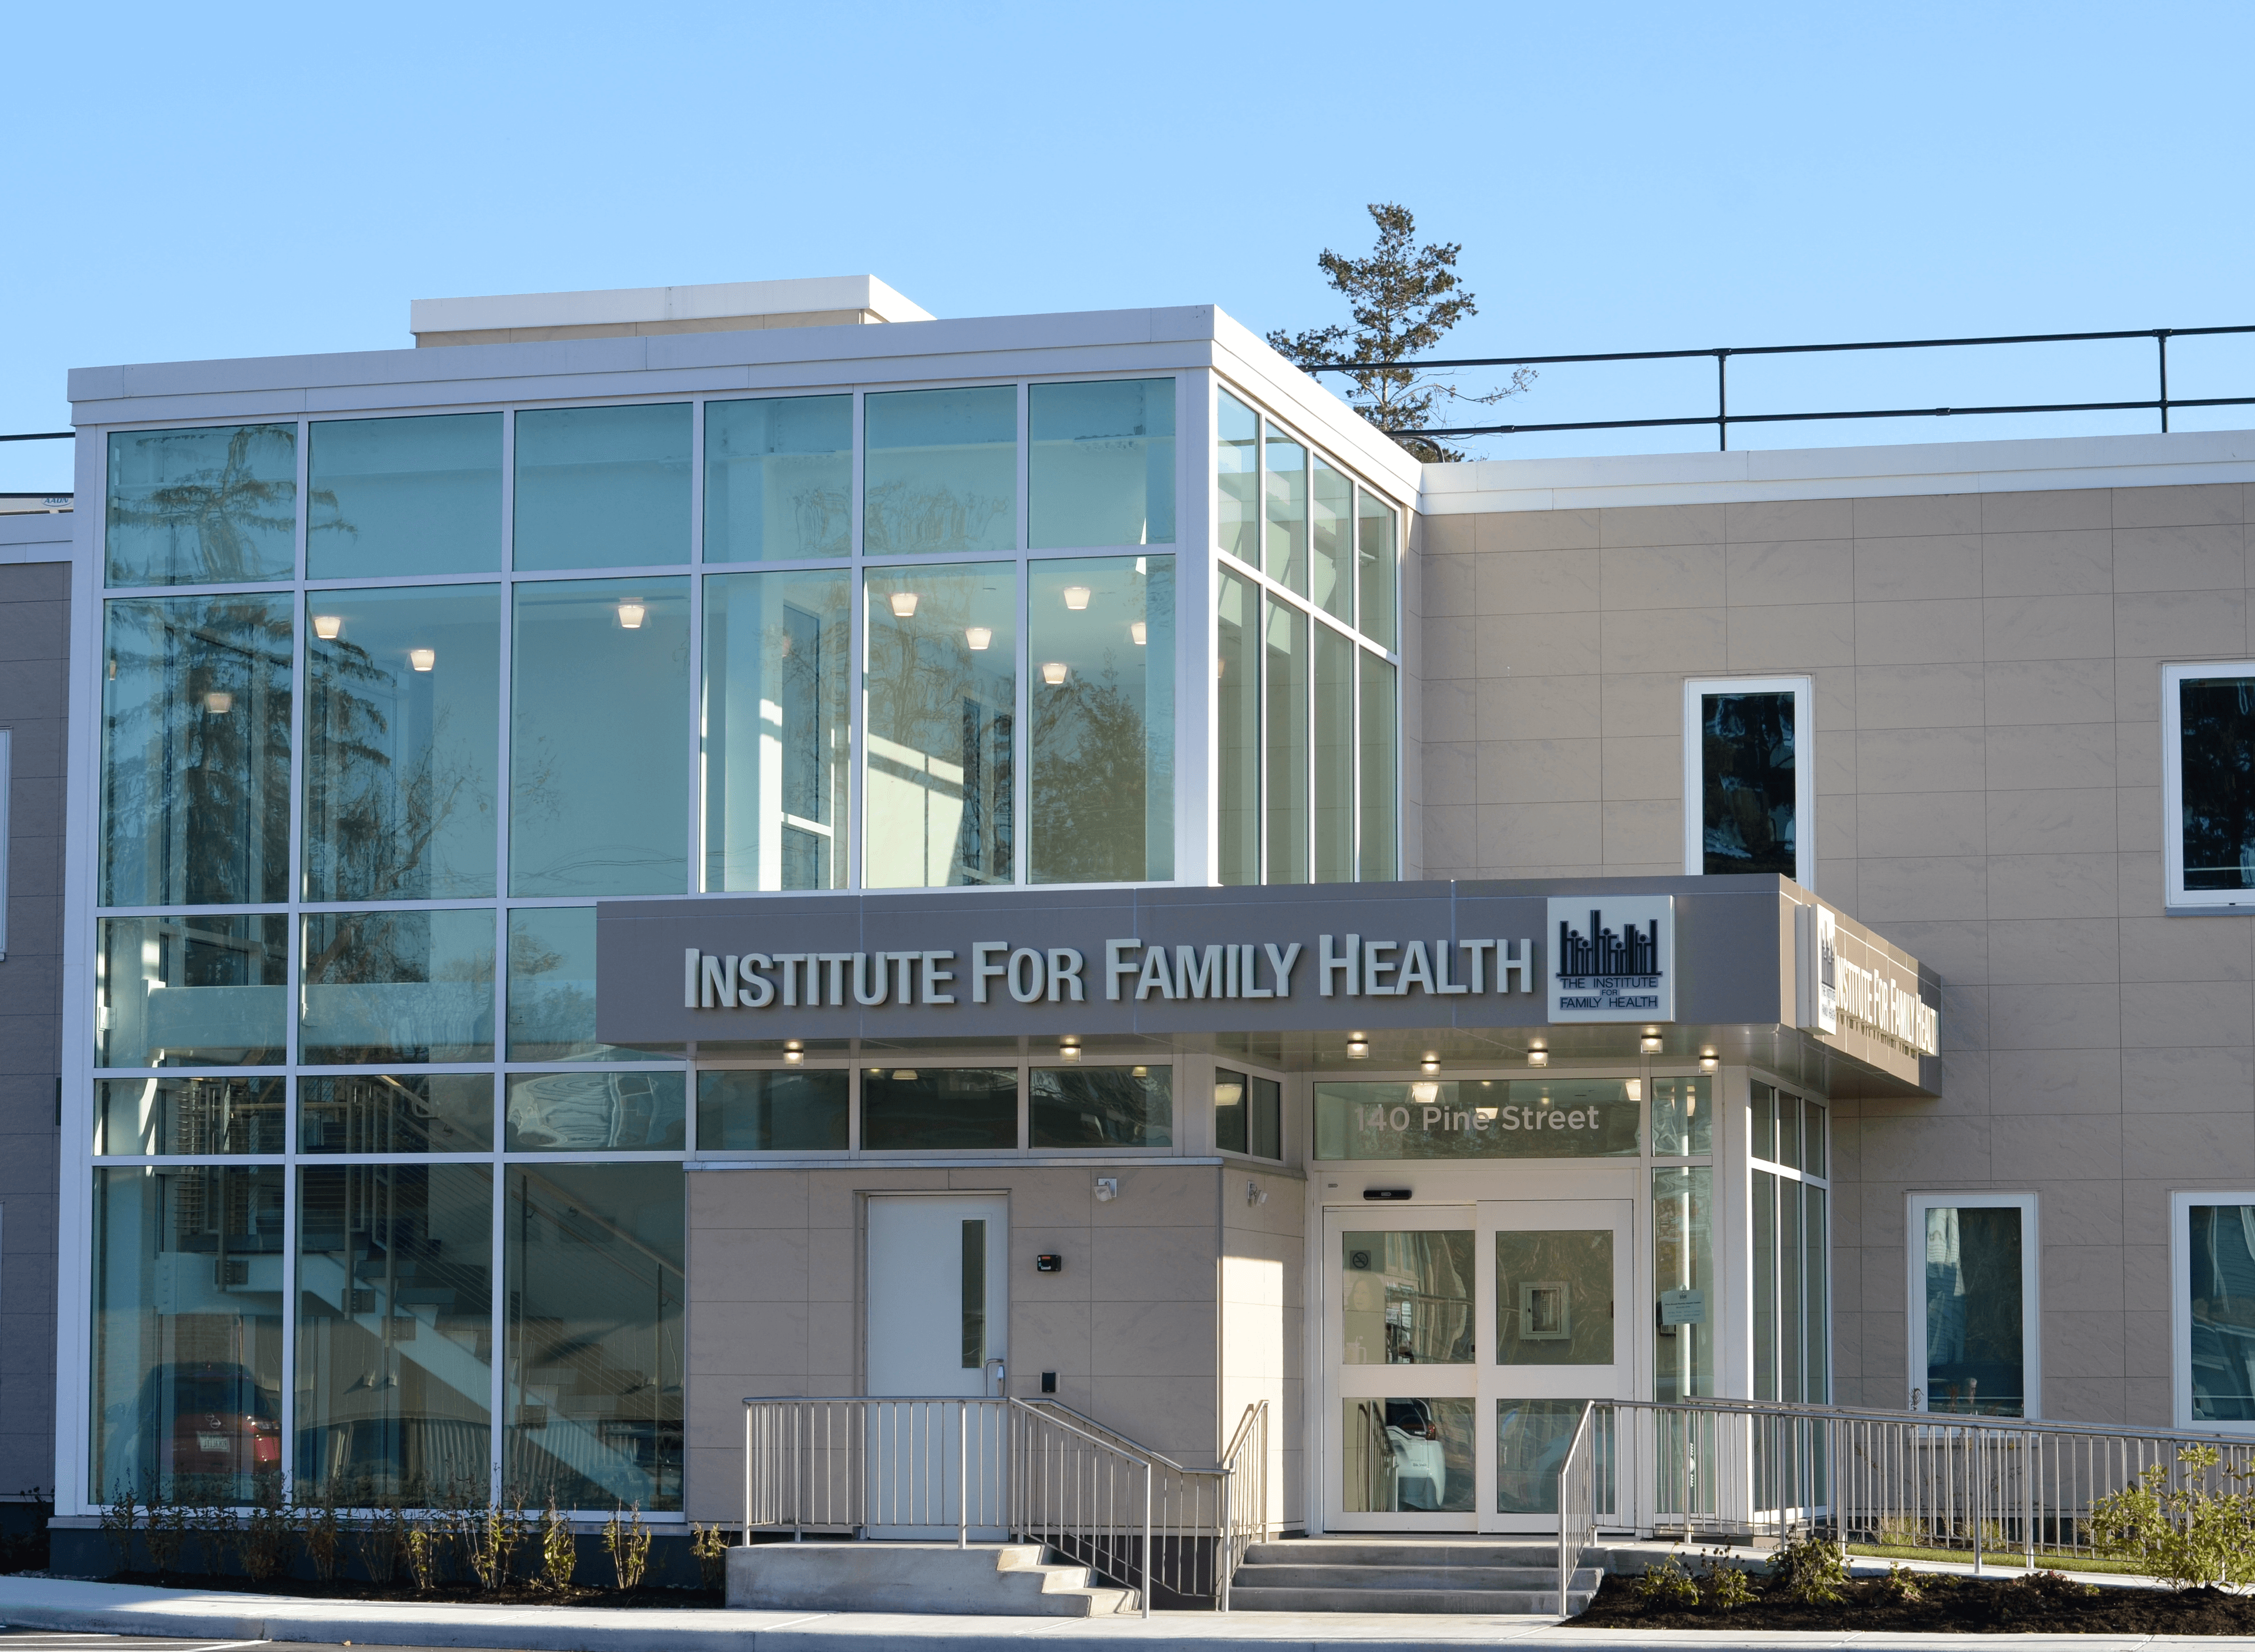 Pine Street Family Health center